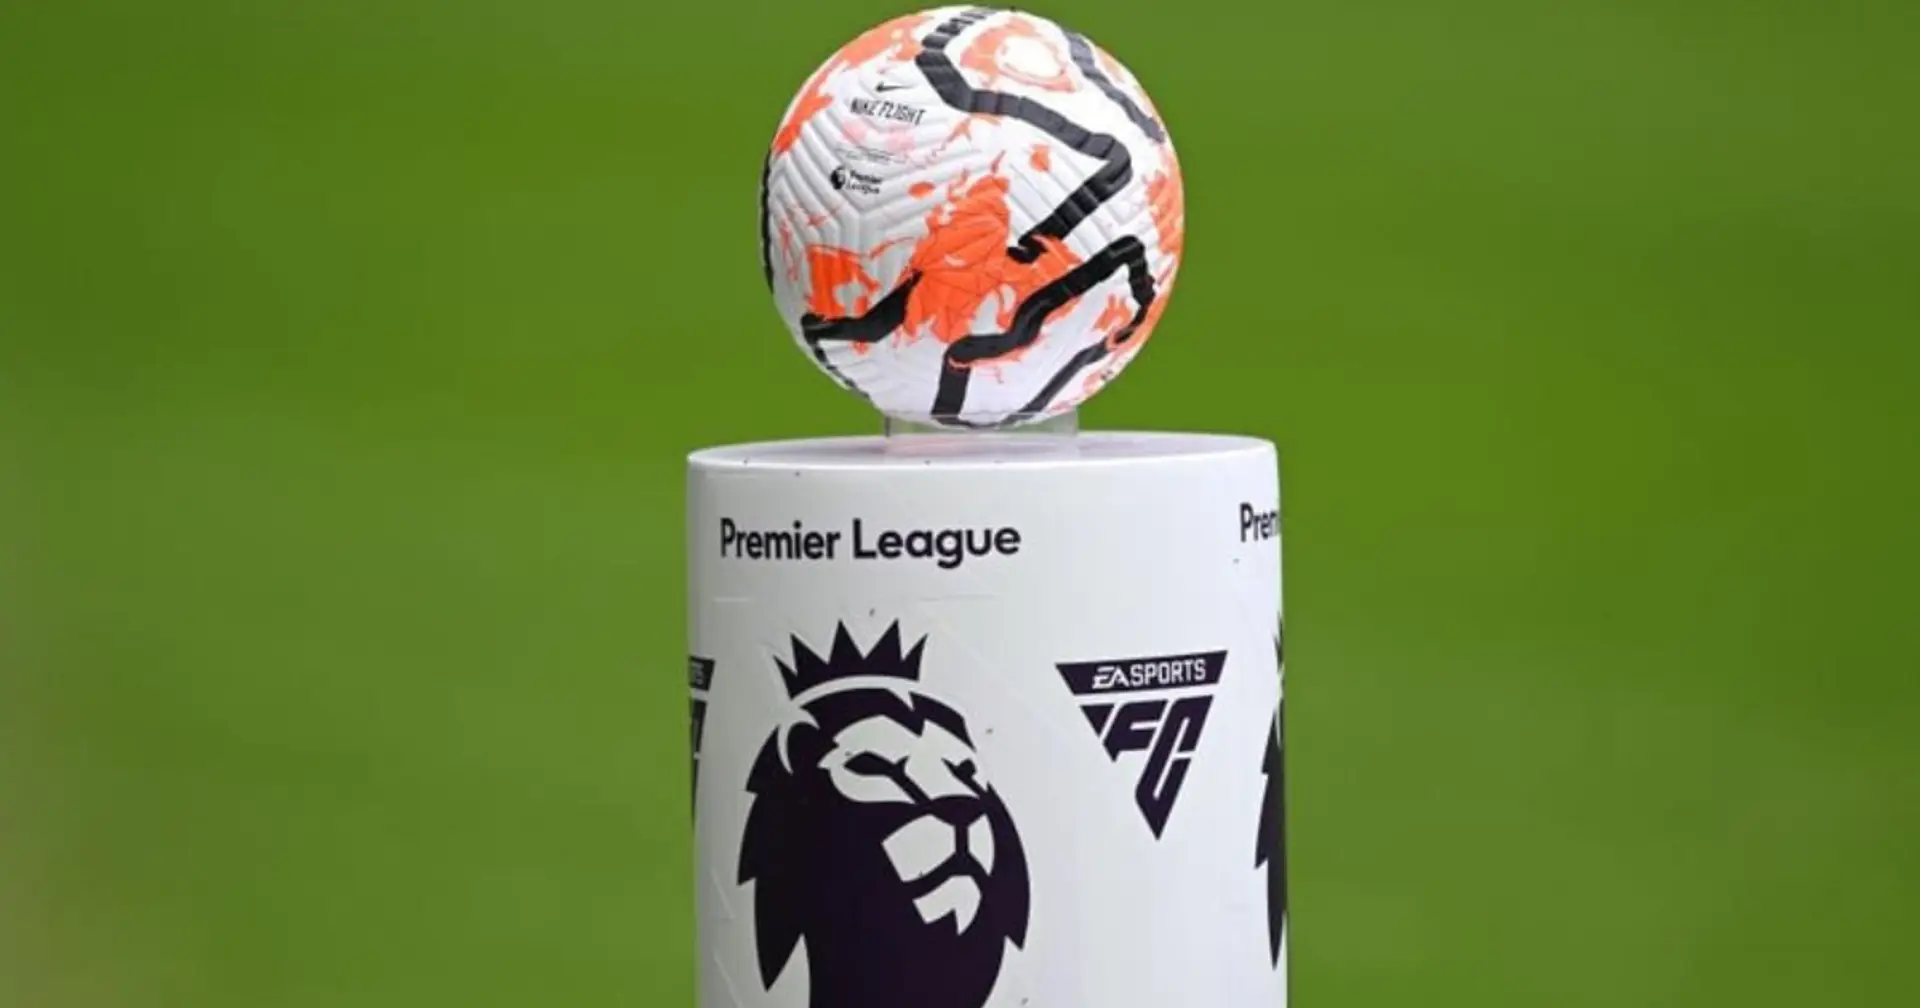 Premier League: Nottingham Forest empfängt Sheffield, Man United spielt am Samstag gegen Tottenham und Man City gegen Newcastle